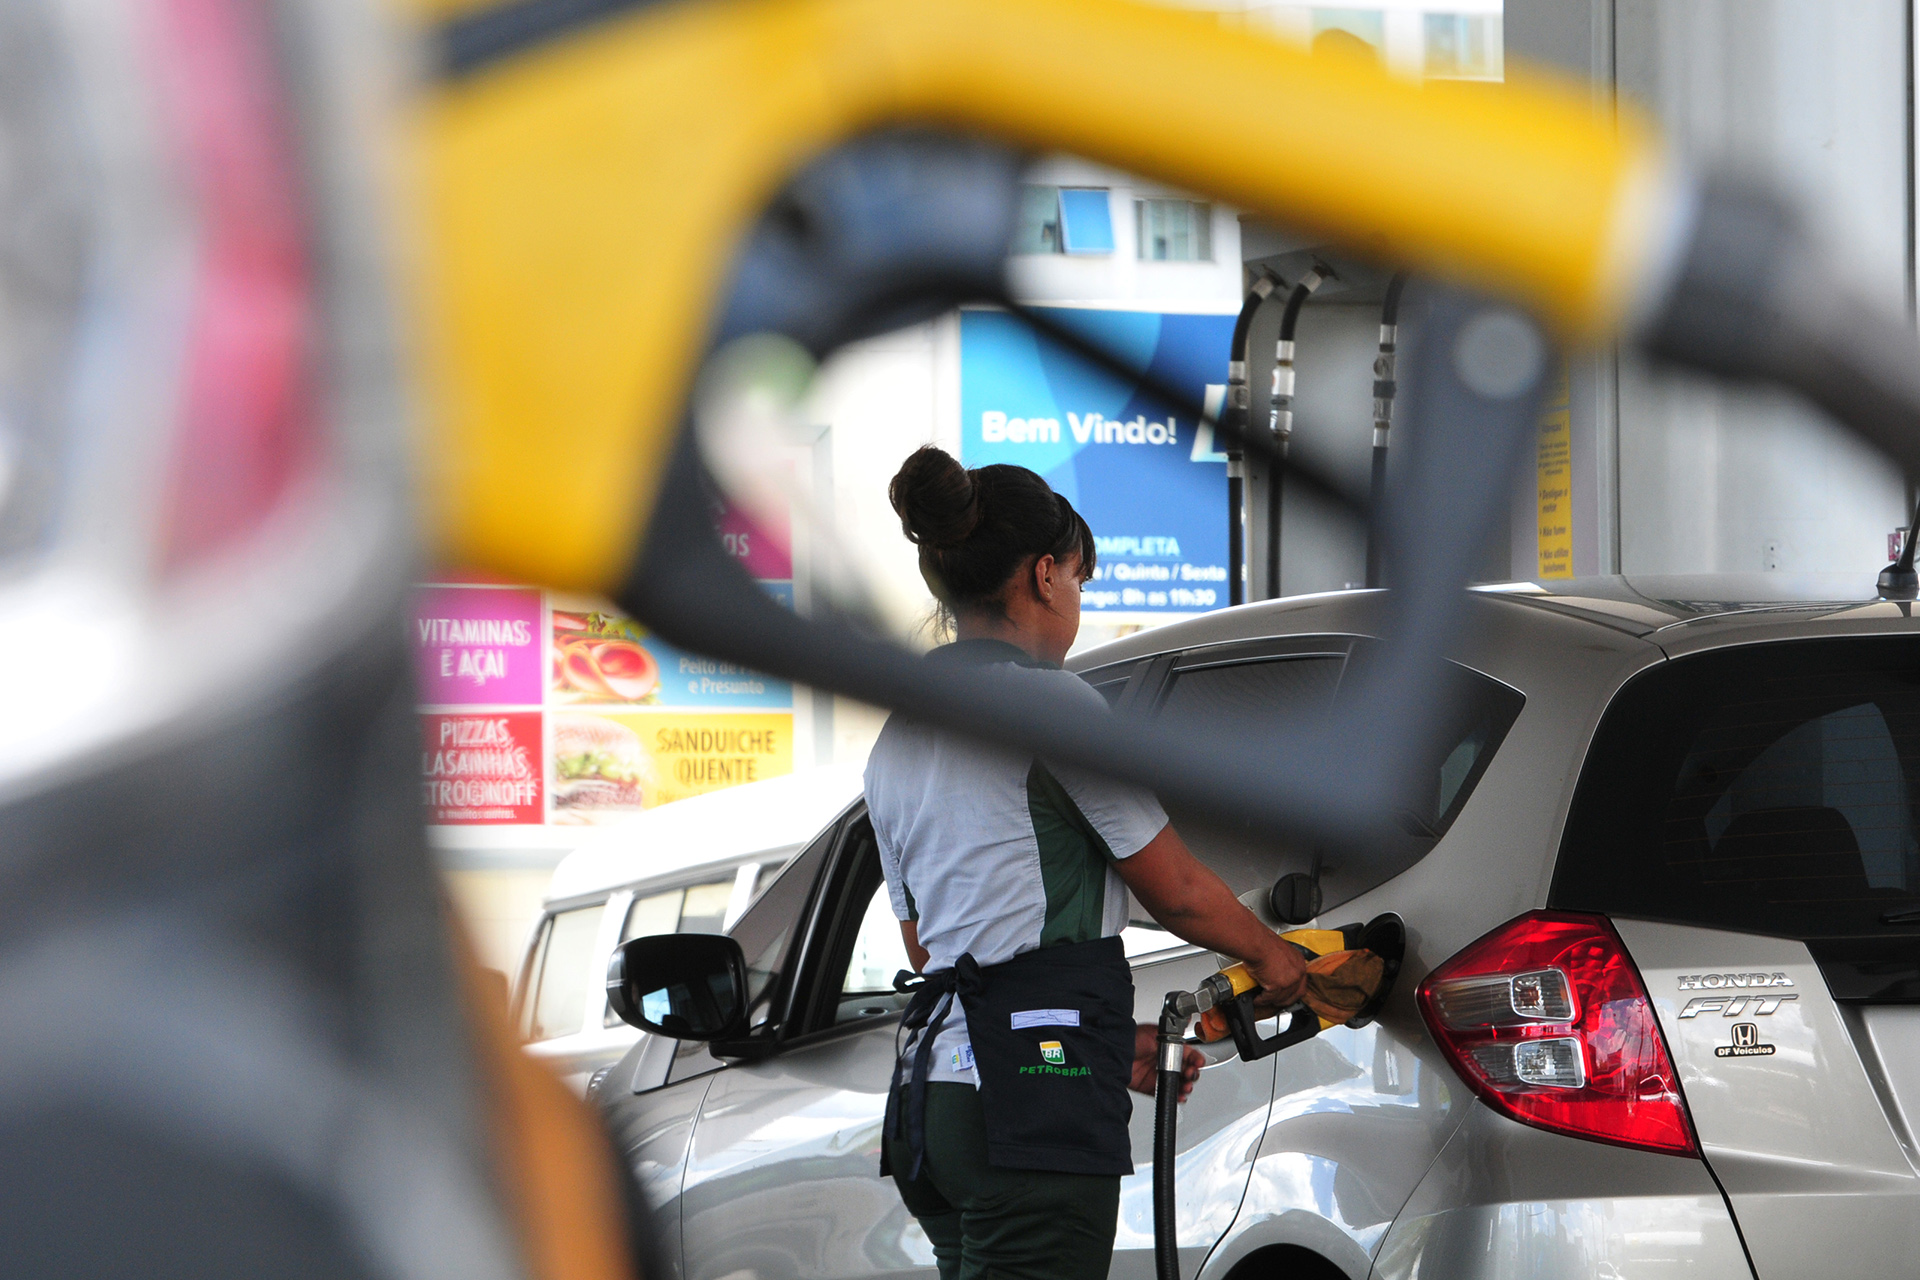 Litro da gasolina está a R$ 3,45 na refinaria e a R$ 4,22 na distribuidora. Do diesel, a R$ 2,82 a 3,30, respectivamente. Do etanol, a R$ 2,86 na distribuidora — o preço na destilaria será divulgado nesta semana